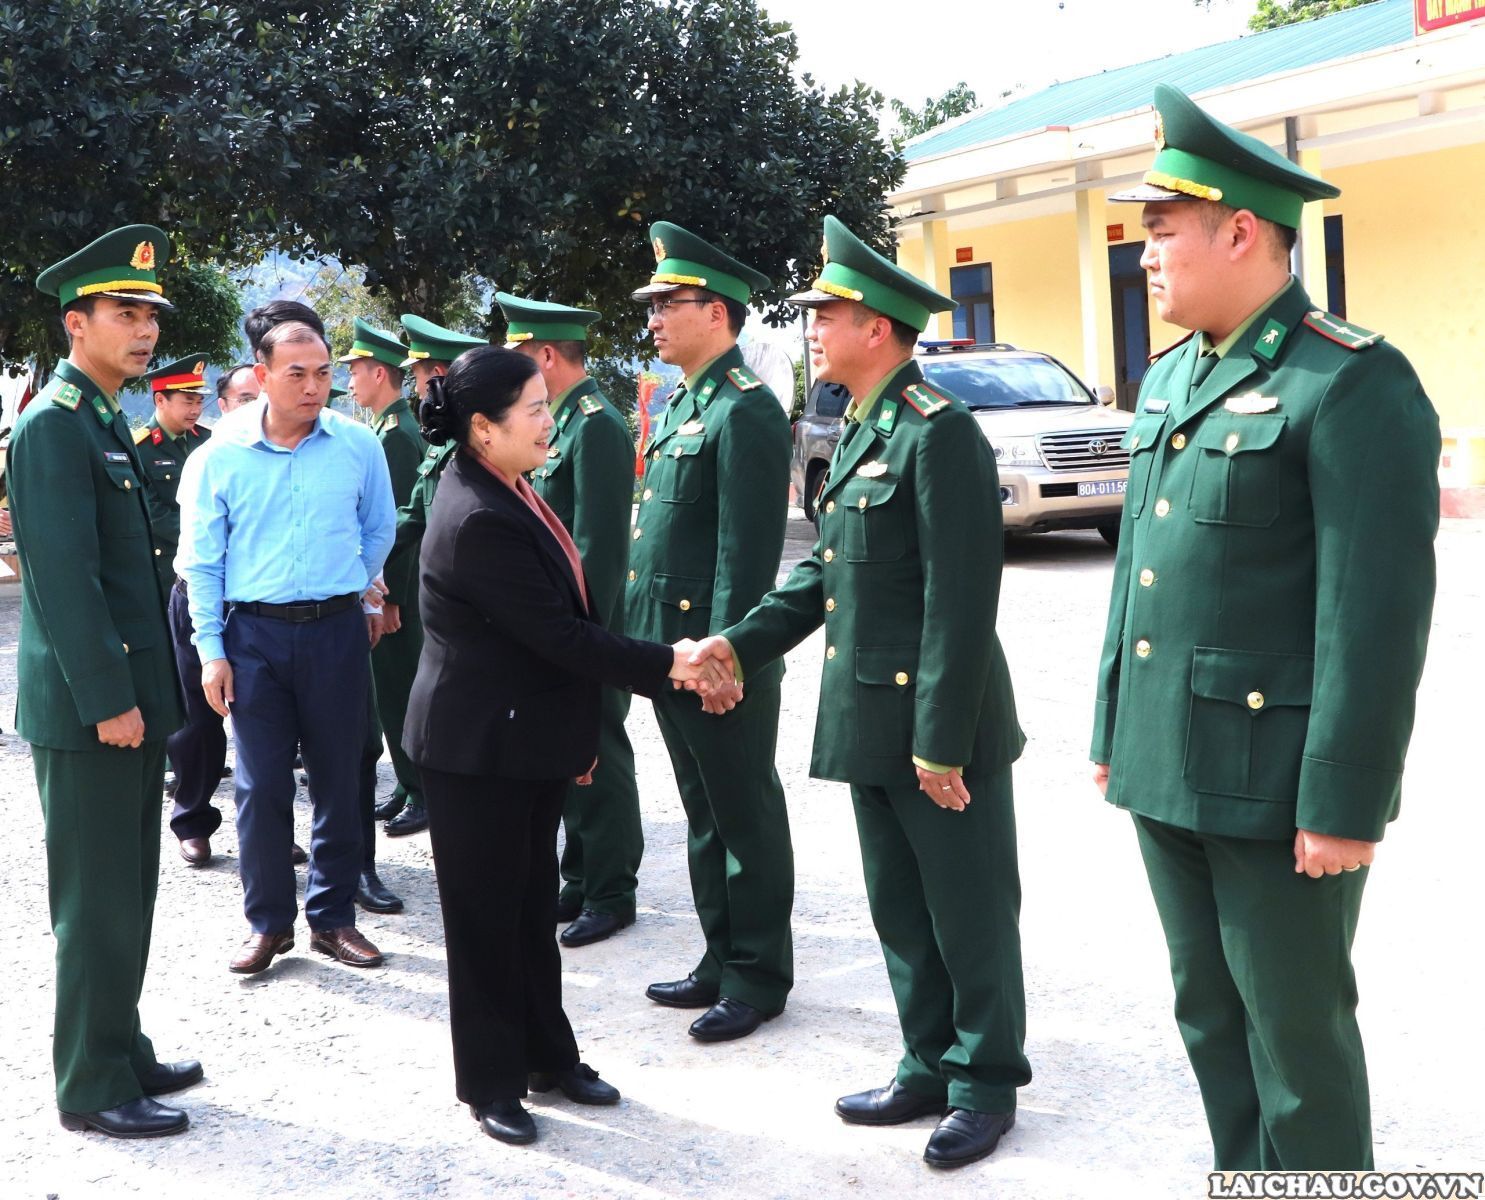 Lai Châu: Bí thư Tỉnh ủy Giàng Páo Mỷ thăm, tặng quà cán bộ, chiến sĩ Đồn Biên phòng và Công an xã Hua Bum